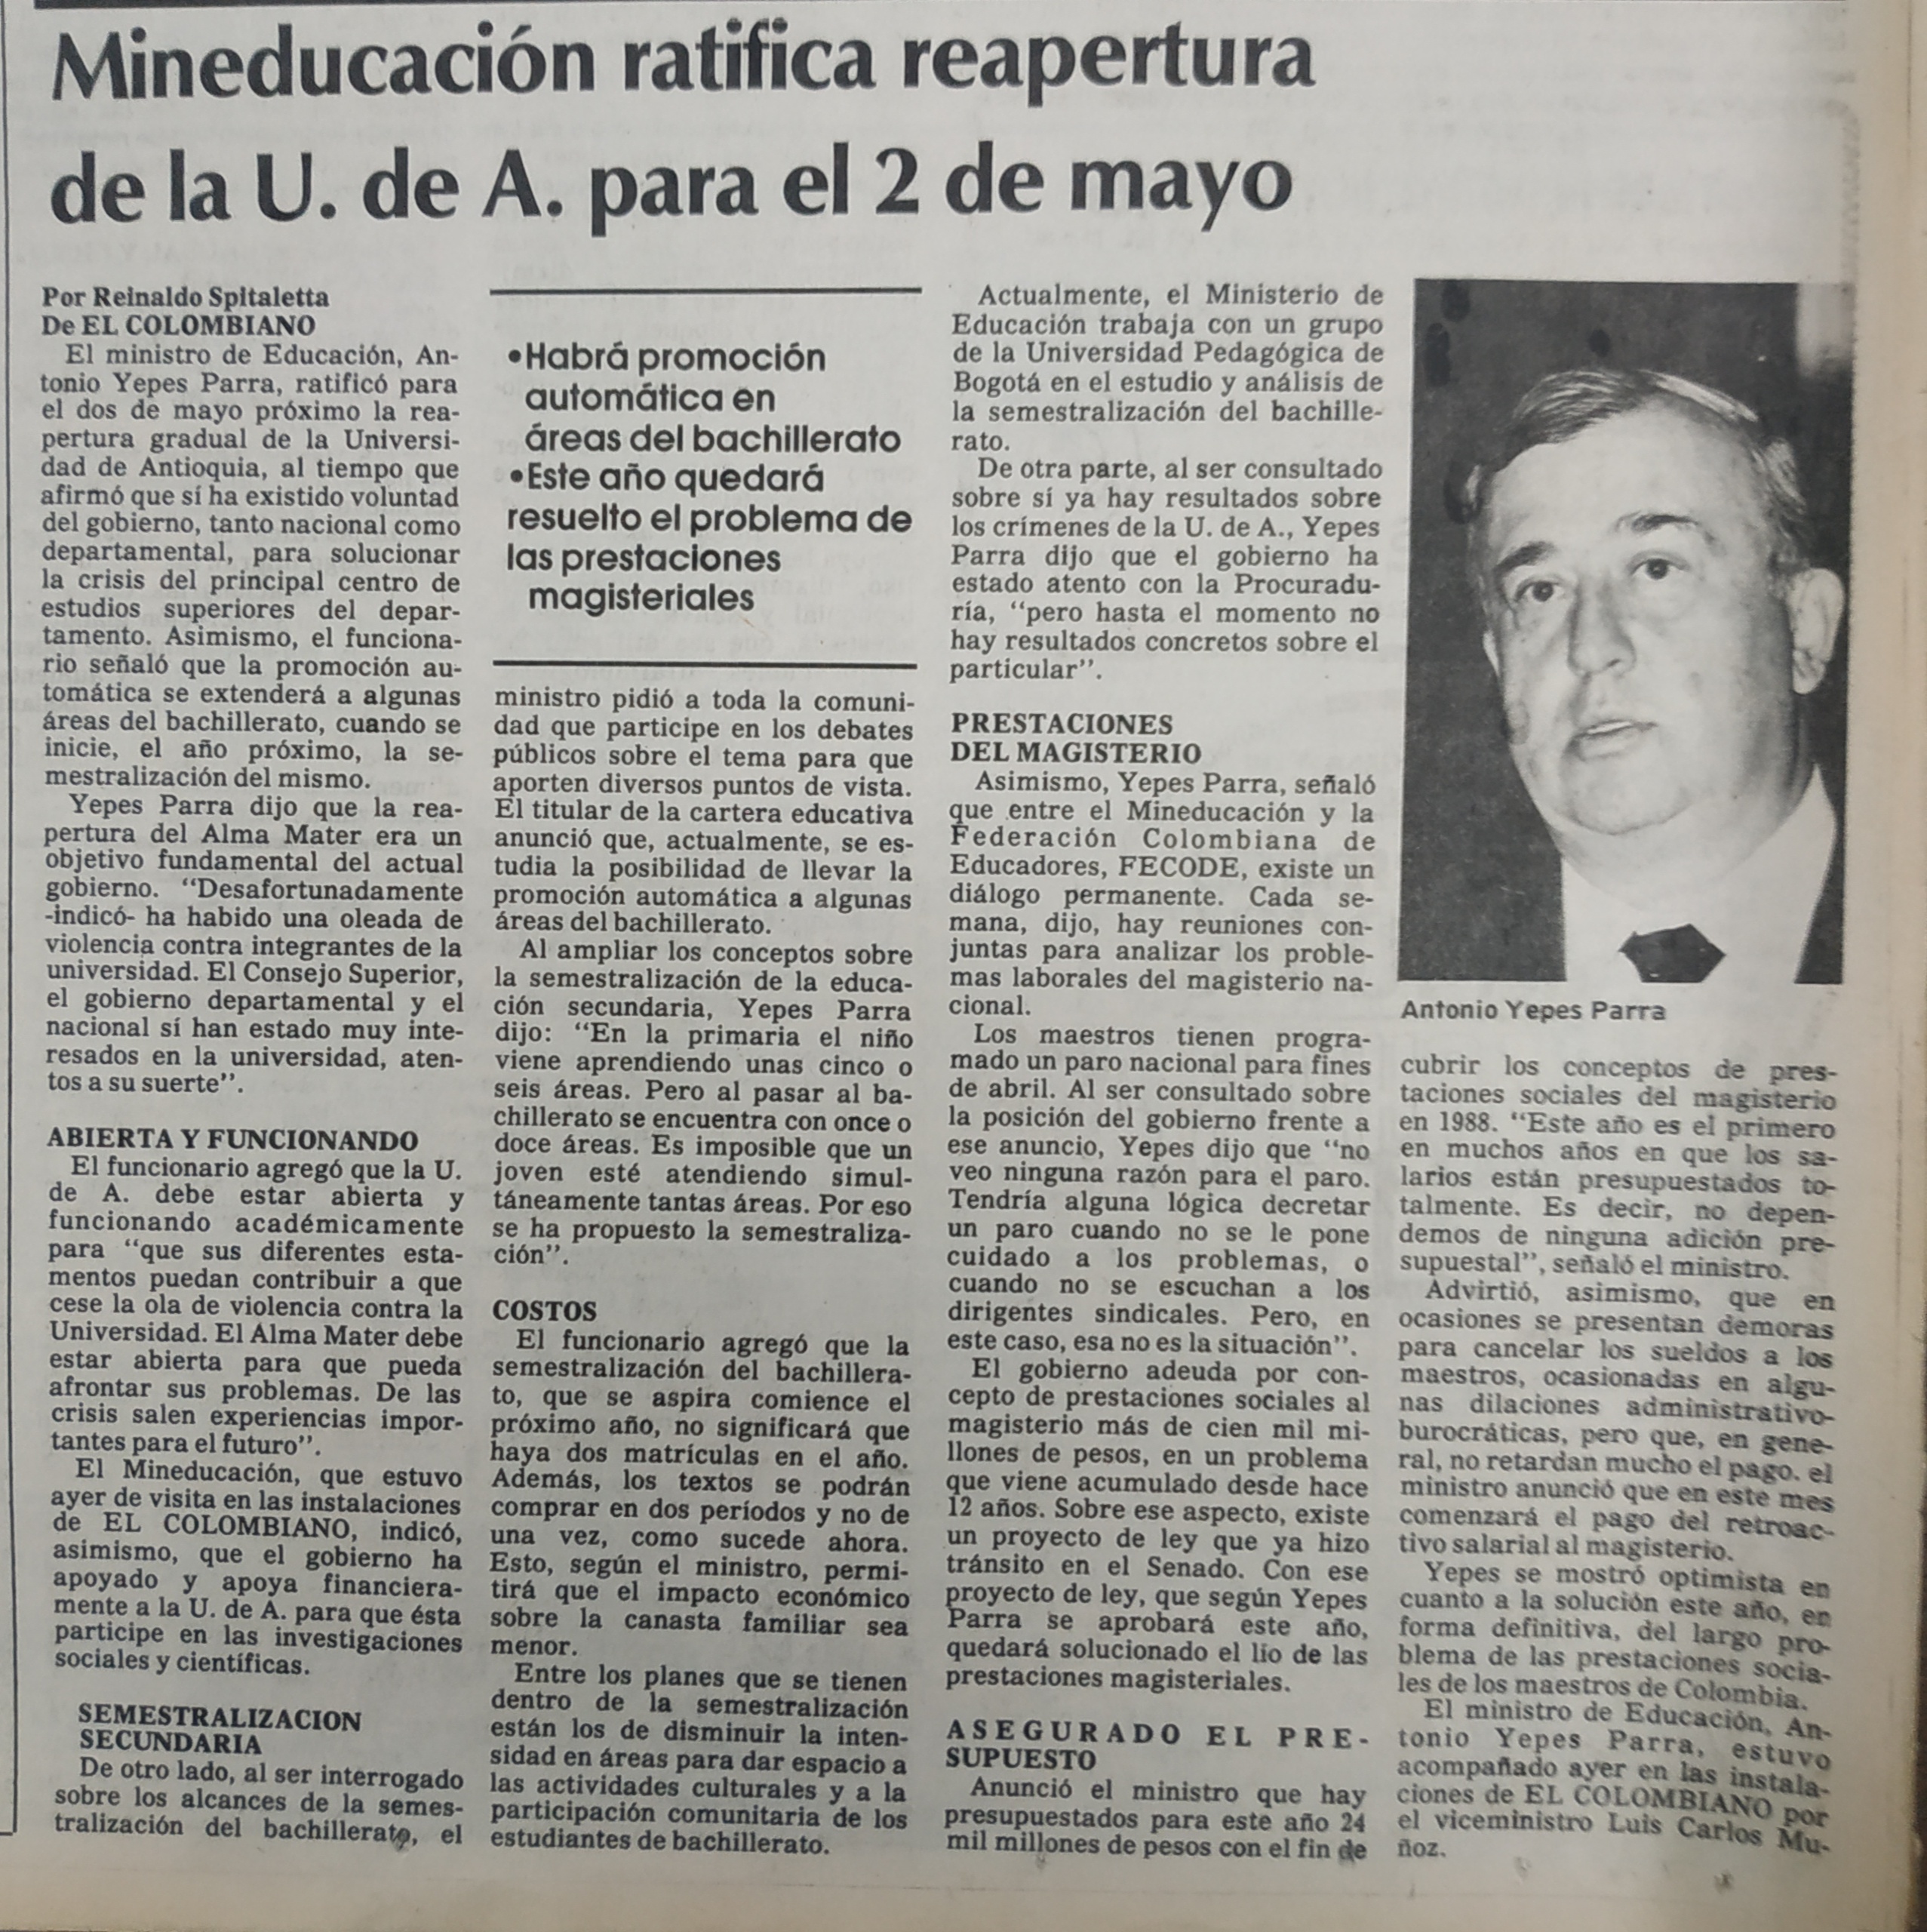 Fotografía tomada de la edición del 17 de abril de 1988 del periódico El Colombiano